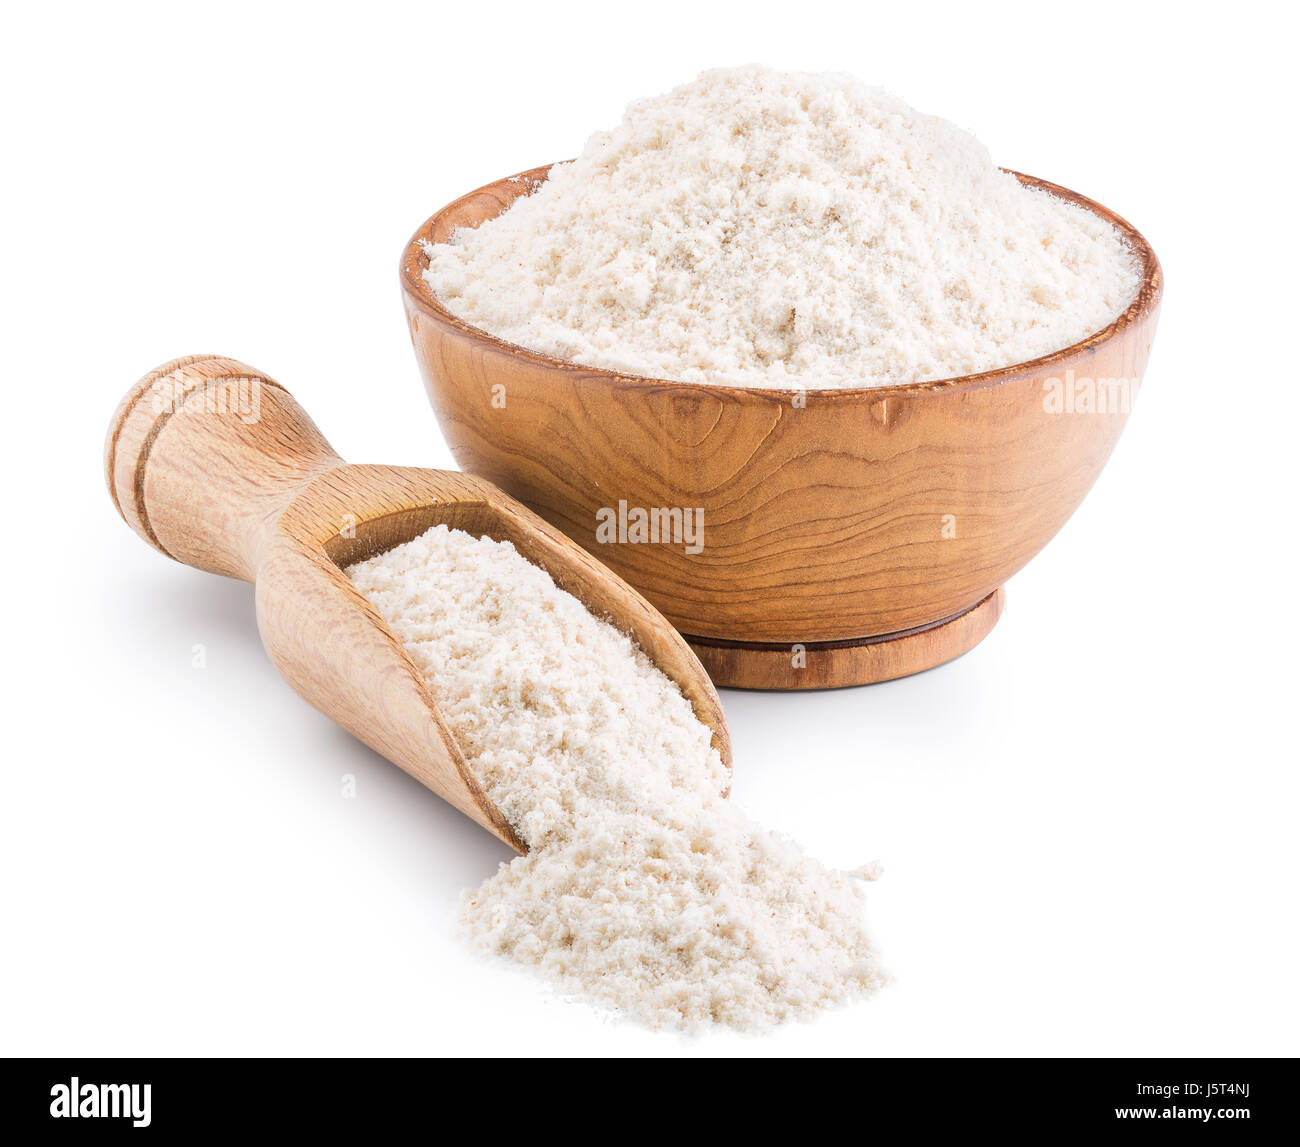 Harina del trigo entera del grano aislado en blanco Foto de stock